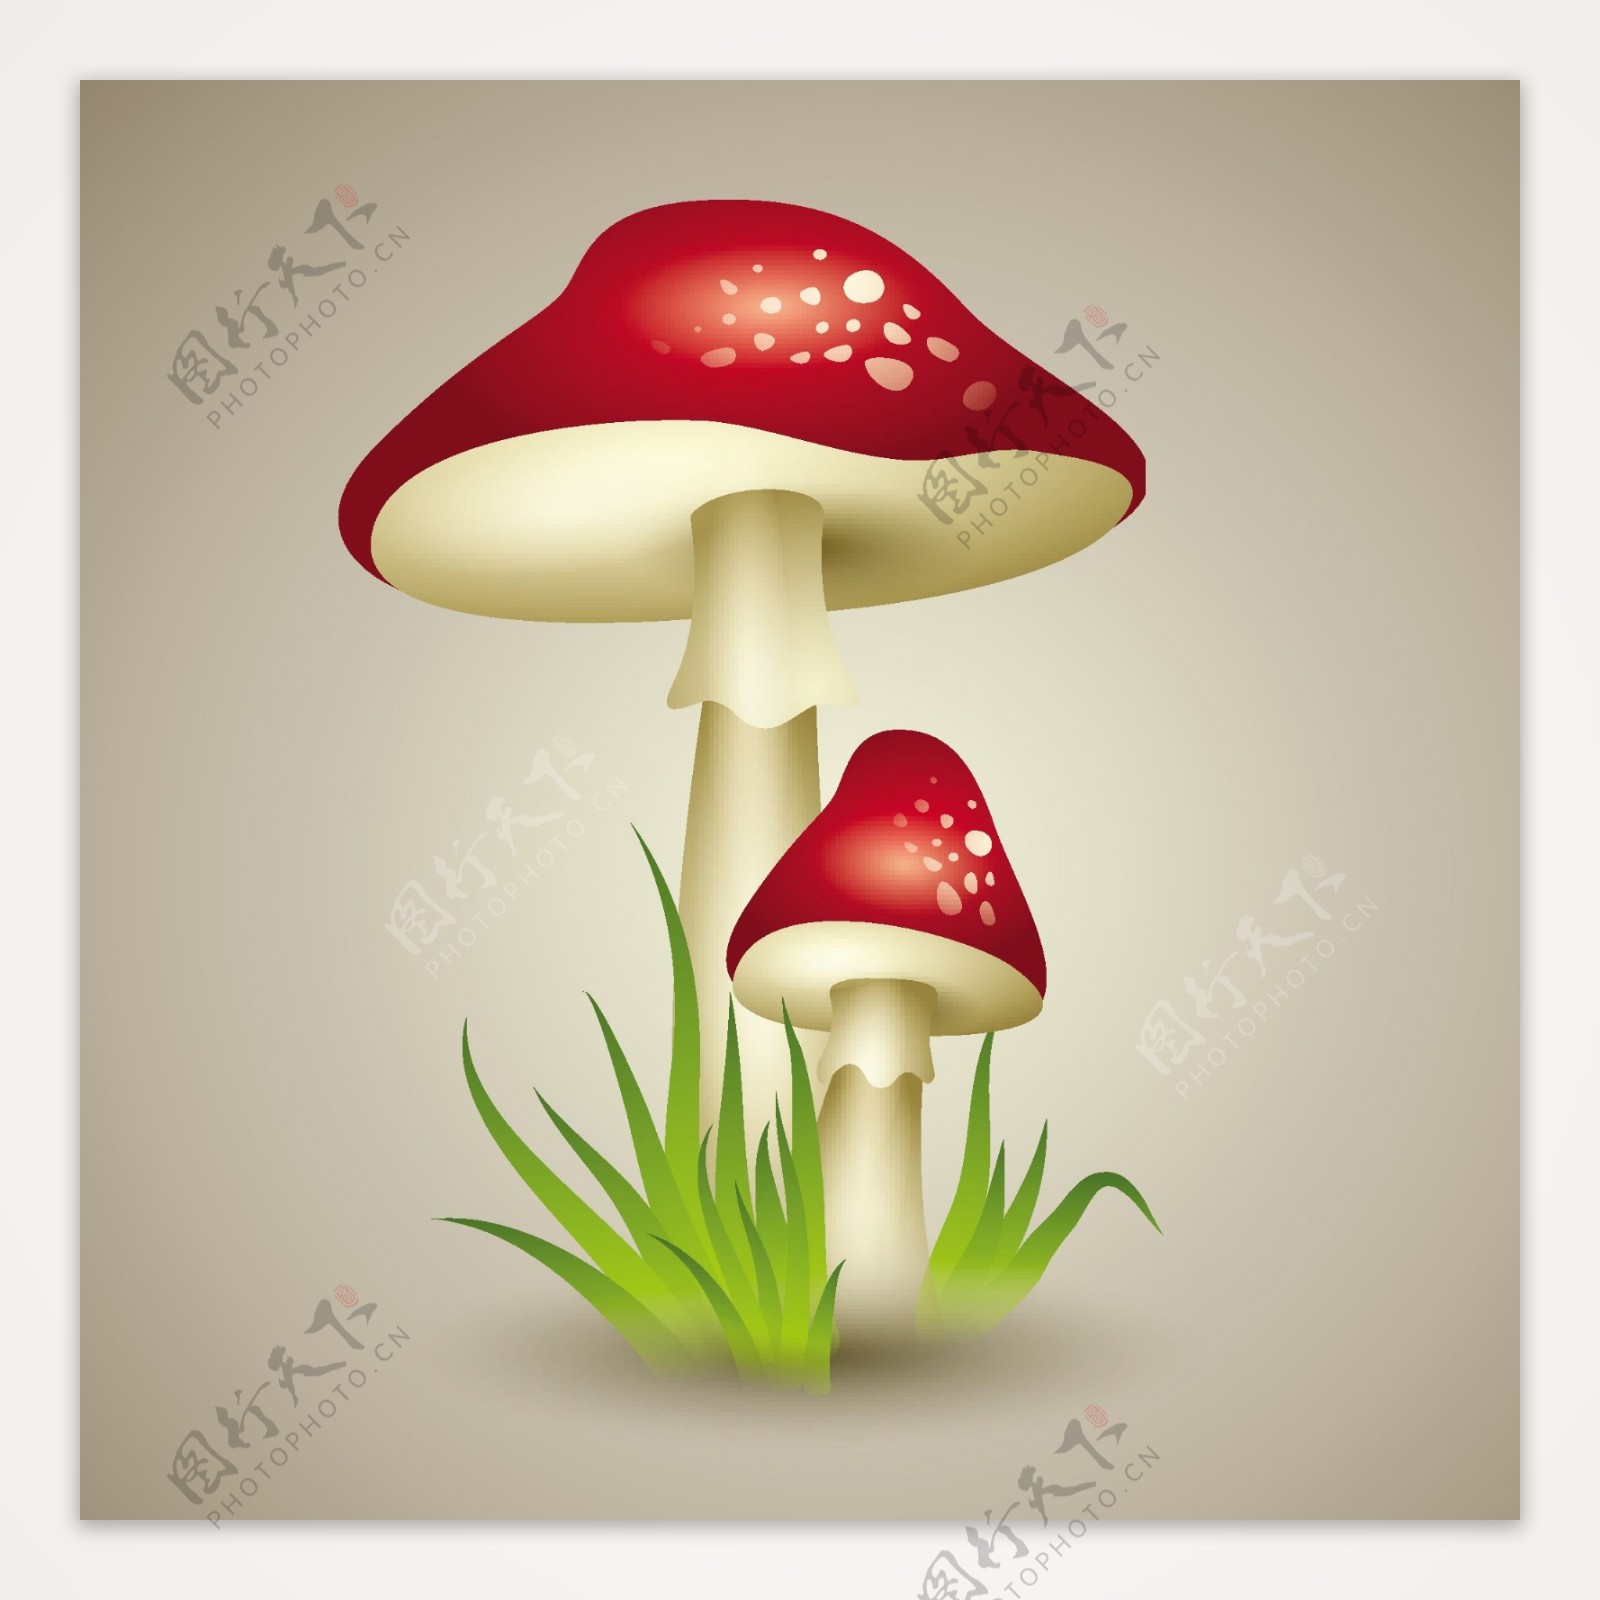 红色卡通蘑菇矢量素材